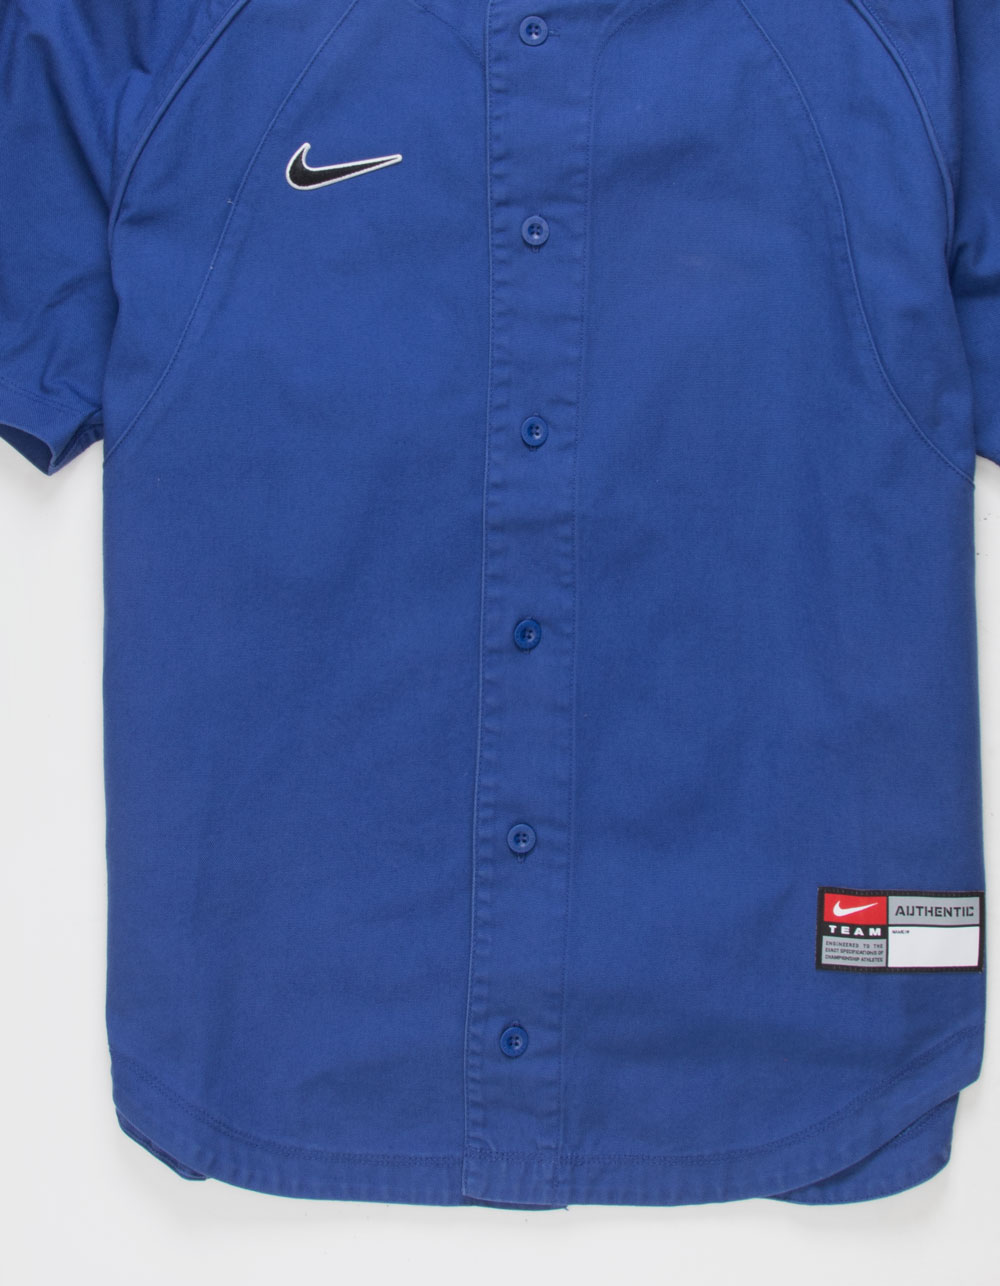 Nike SB Blue Baseball Jersey